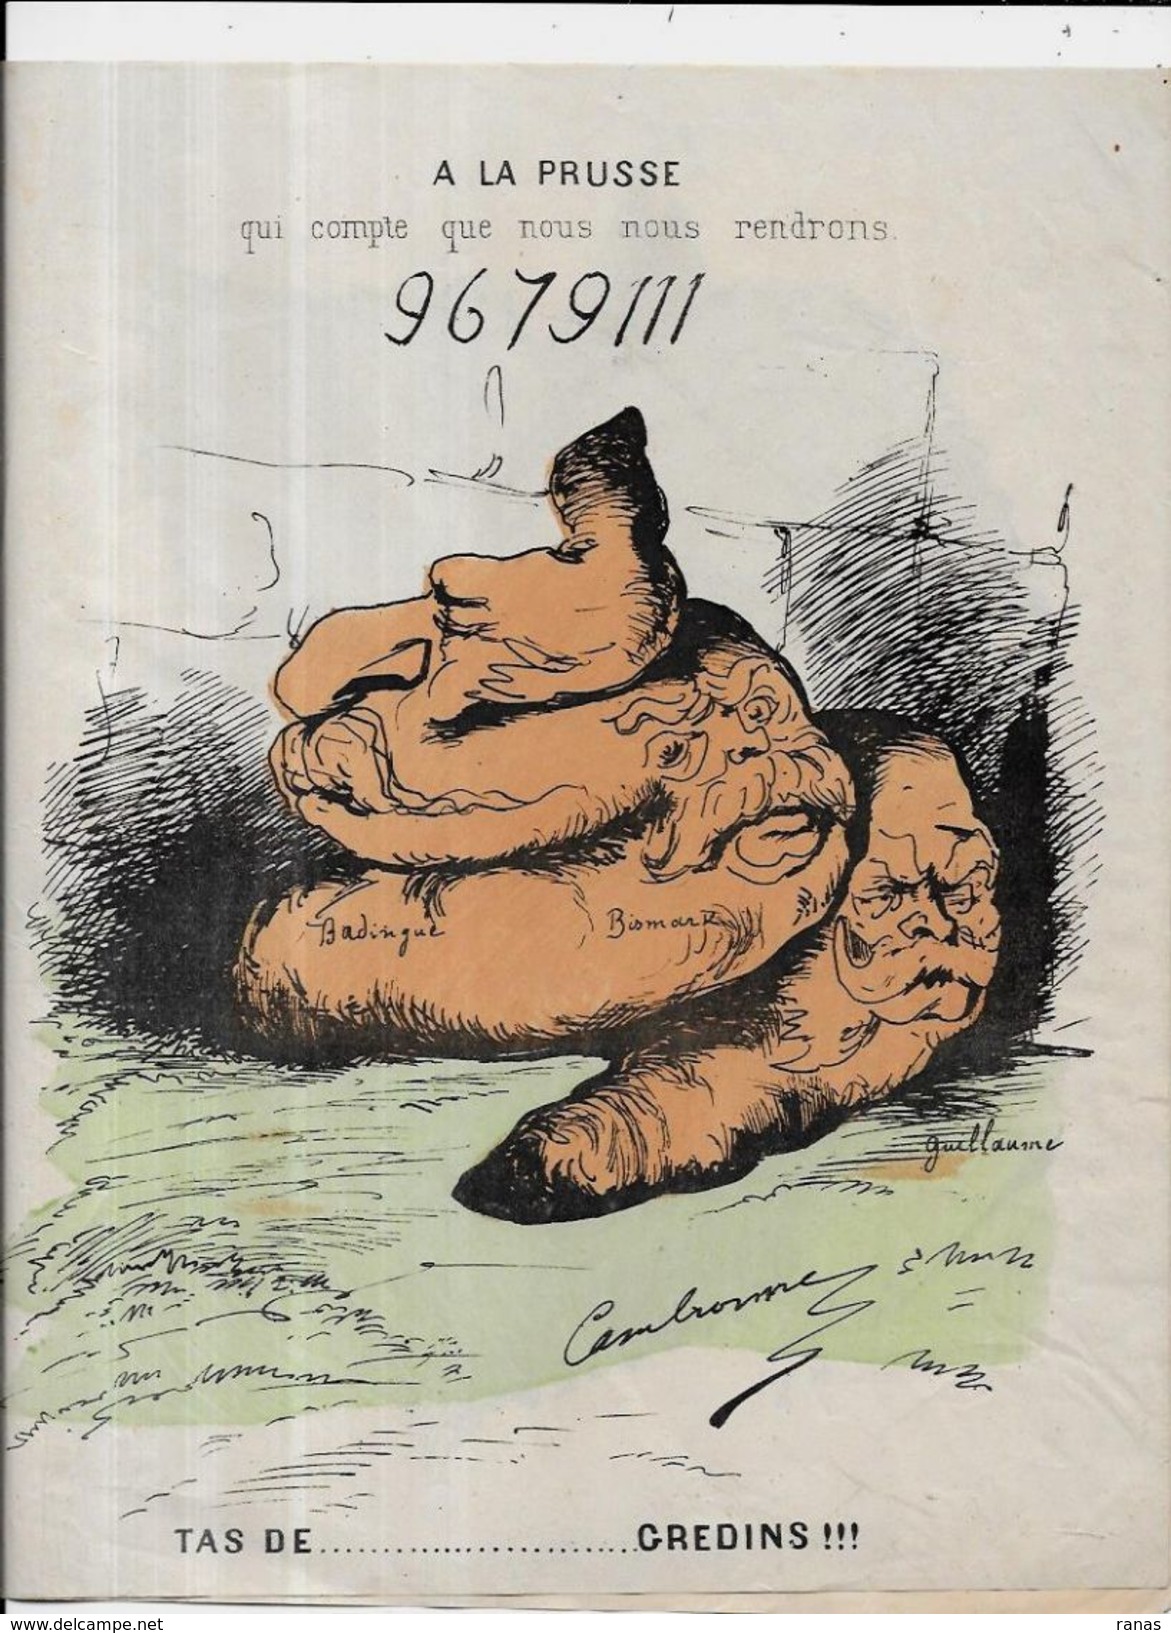 Estampe Gravure Satirique Caricature D'époque 1870 Bismarck Guillaume Napoléon III Deux Volets Scatologie - Estampes & Gravures